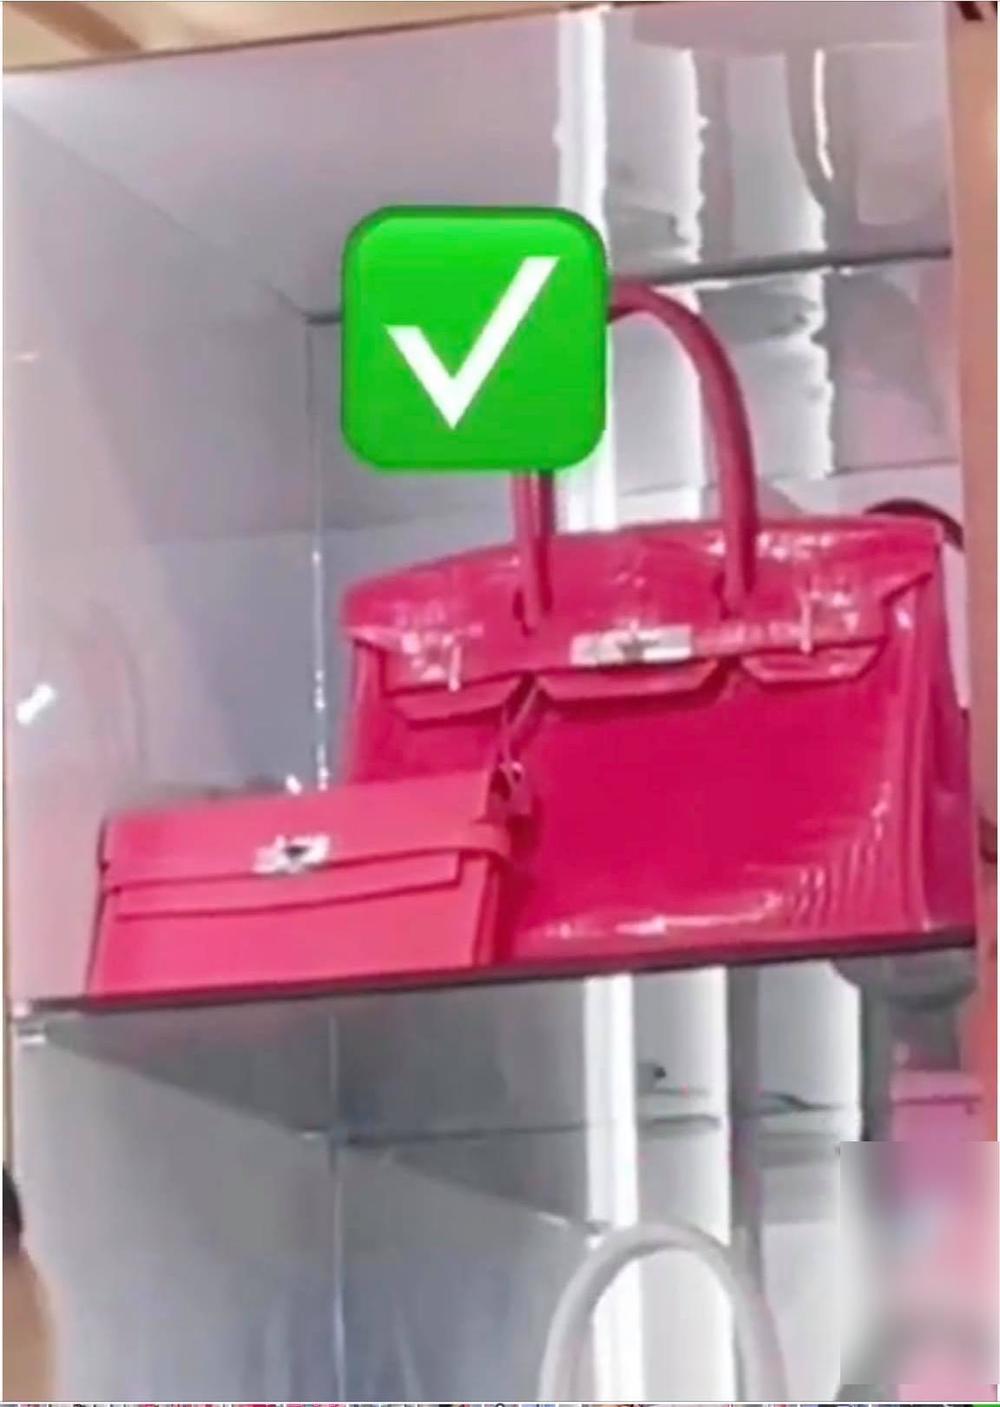  
Chiếc túi xách màu hồng của Ngọc Trinh hơn 1 tỷ đồng. (Ảnh: Chụp màn hình)